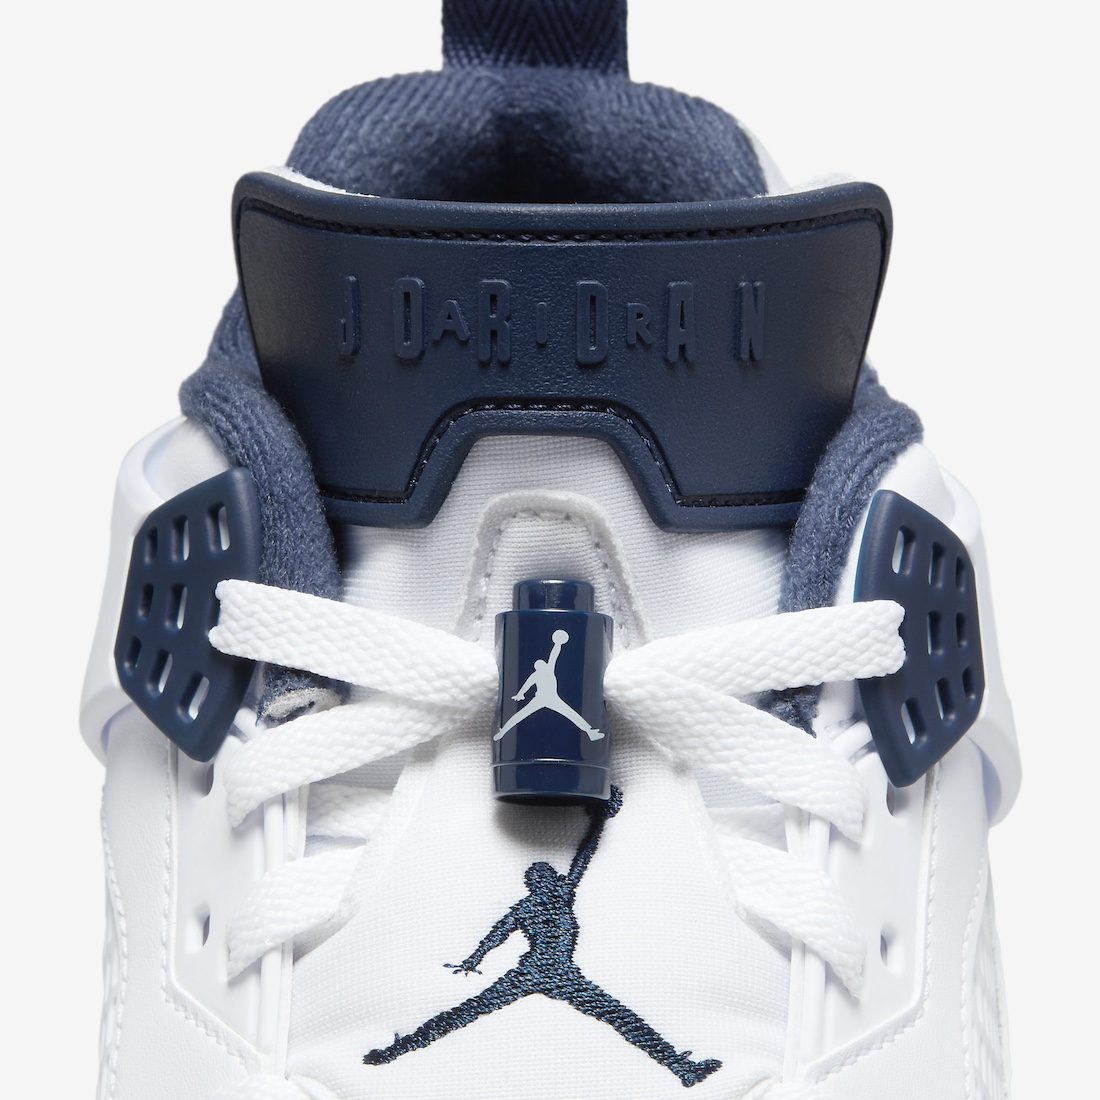 Th Air Jordan 6 Gorgtown Drops This Fall